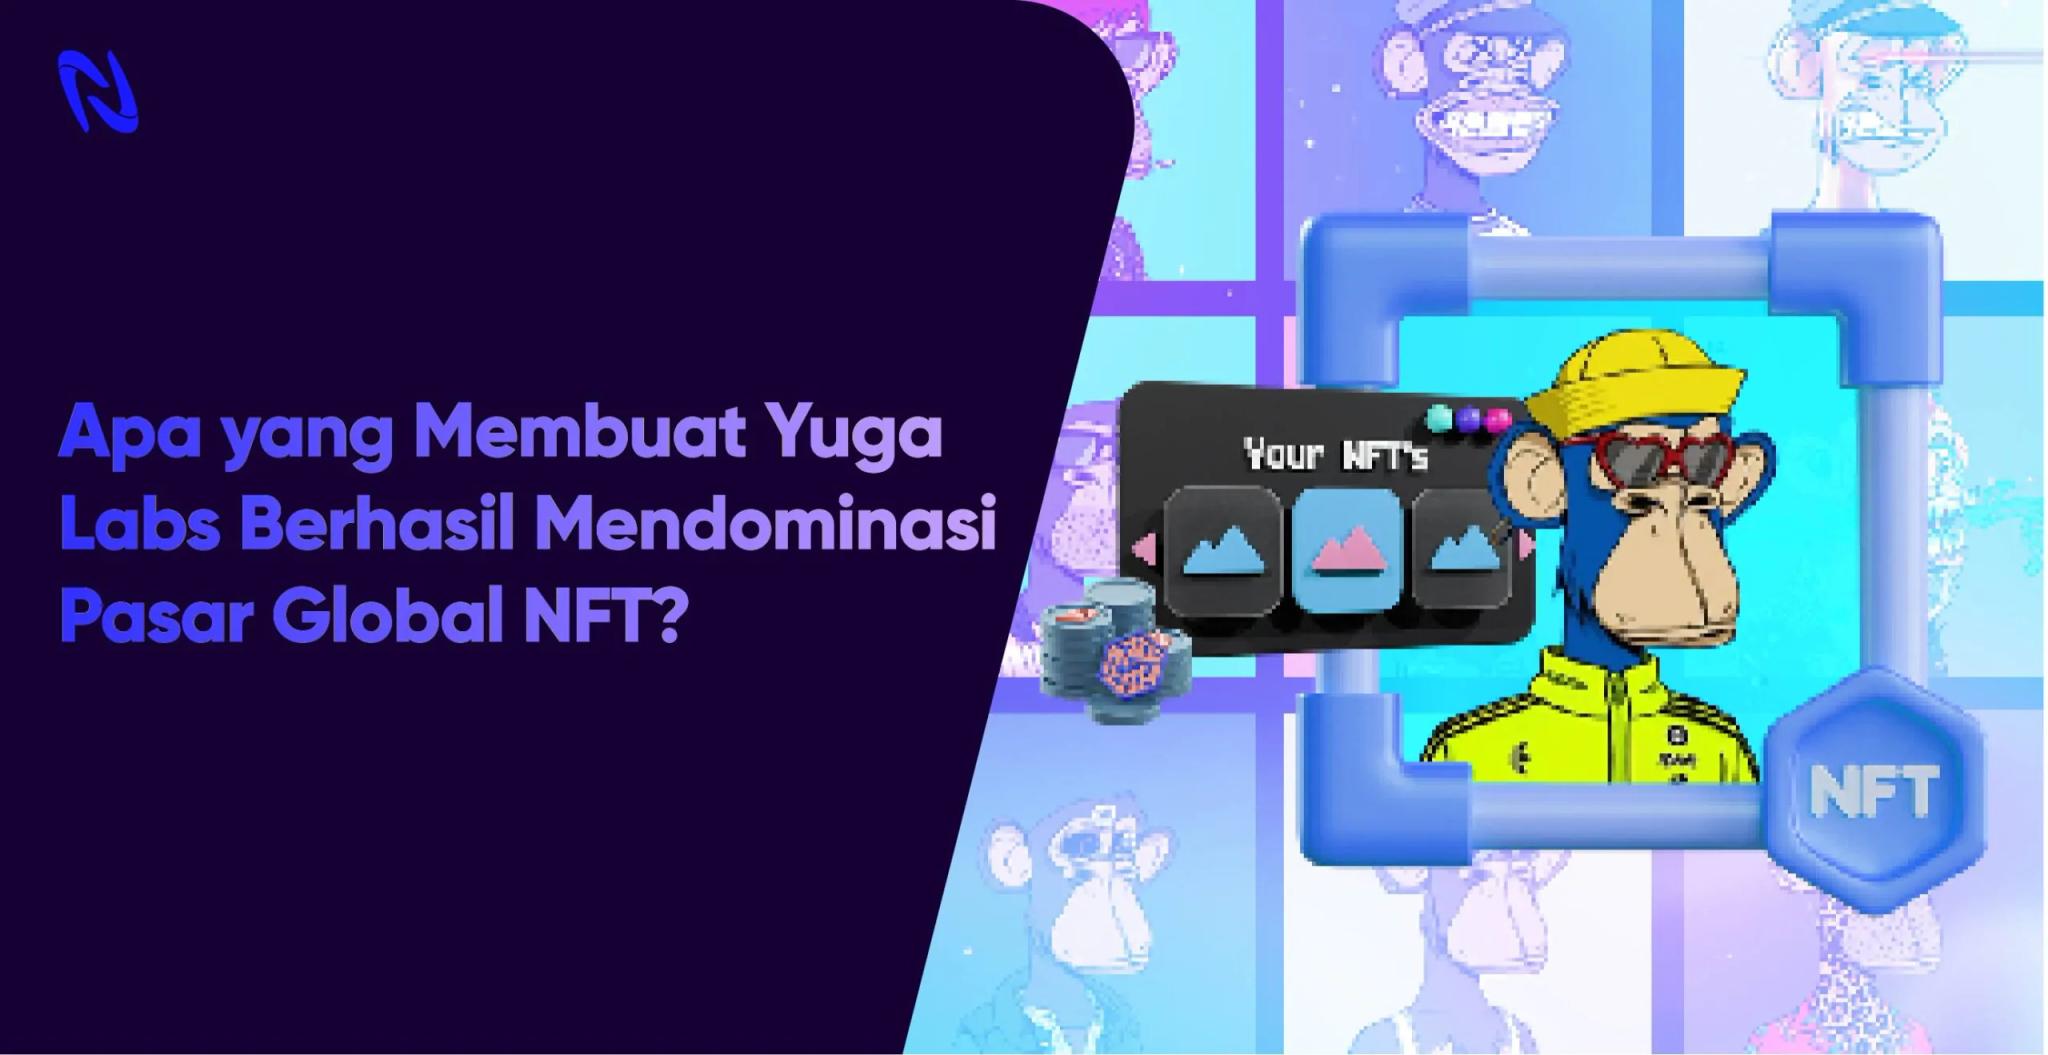 Apa yang Membuat Yuga Labs Berhasil Mendominasi Pasar Global NFT?